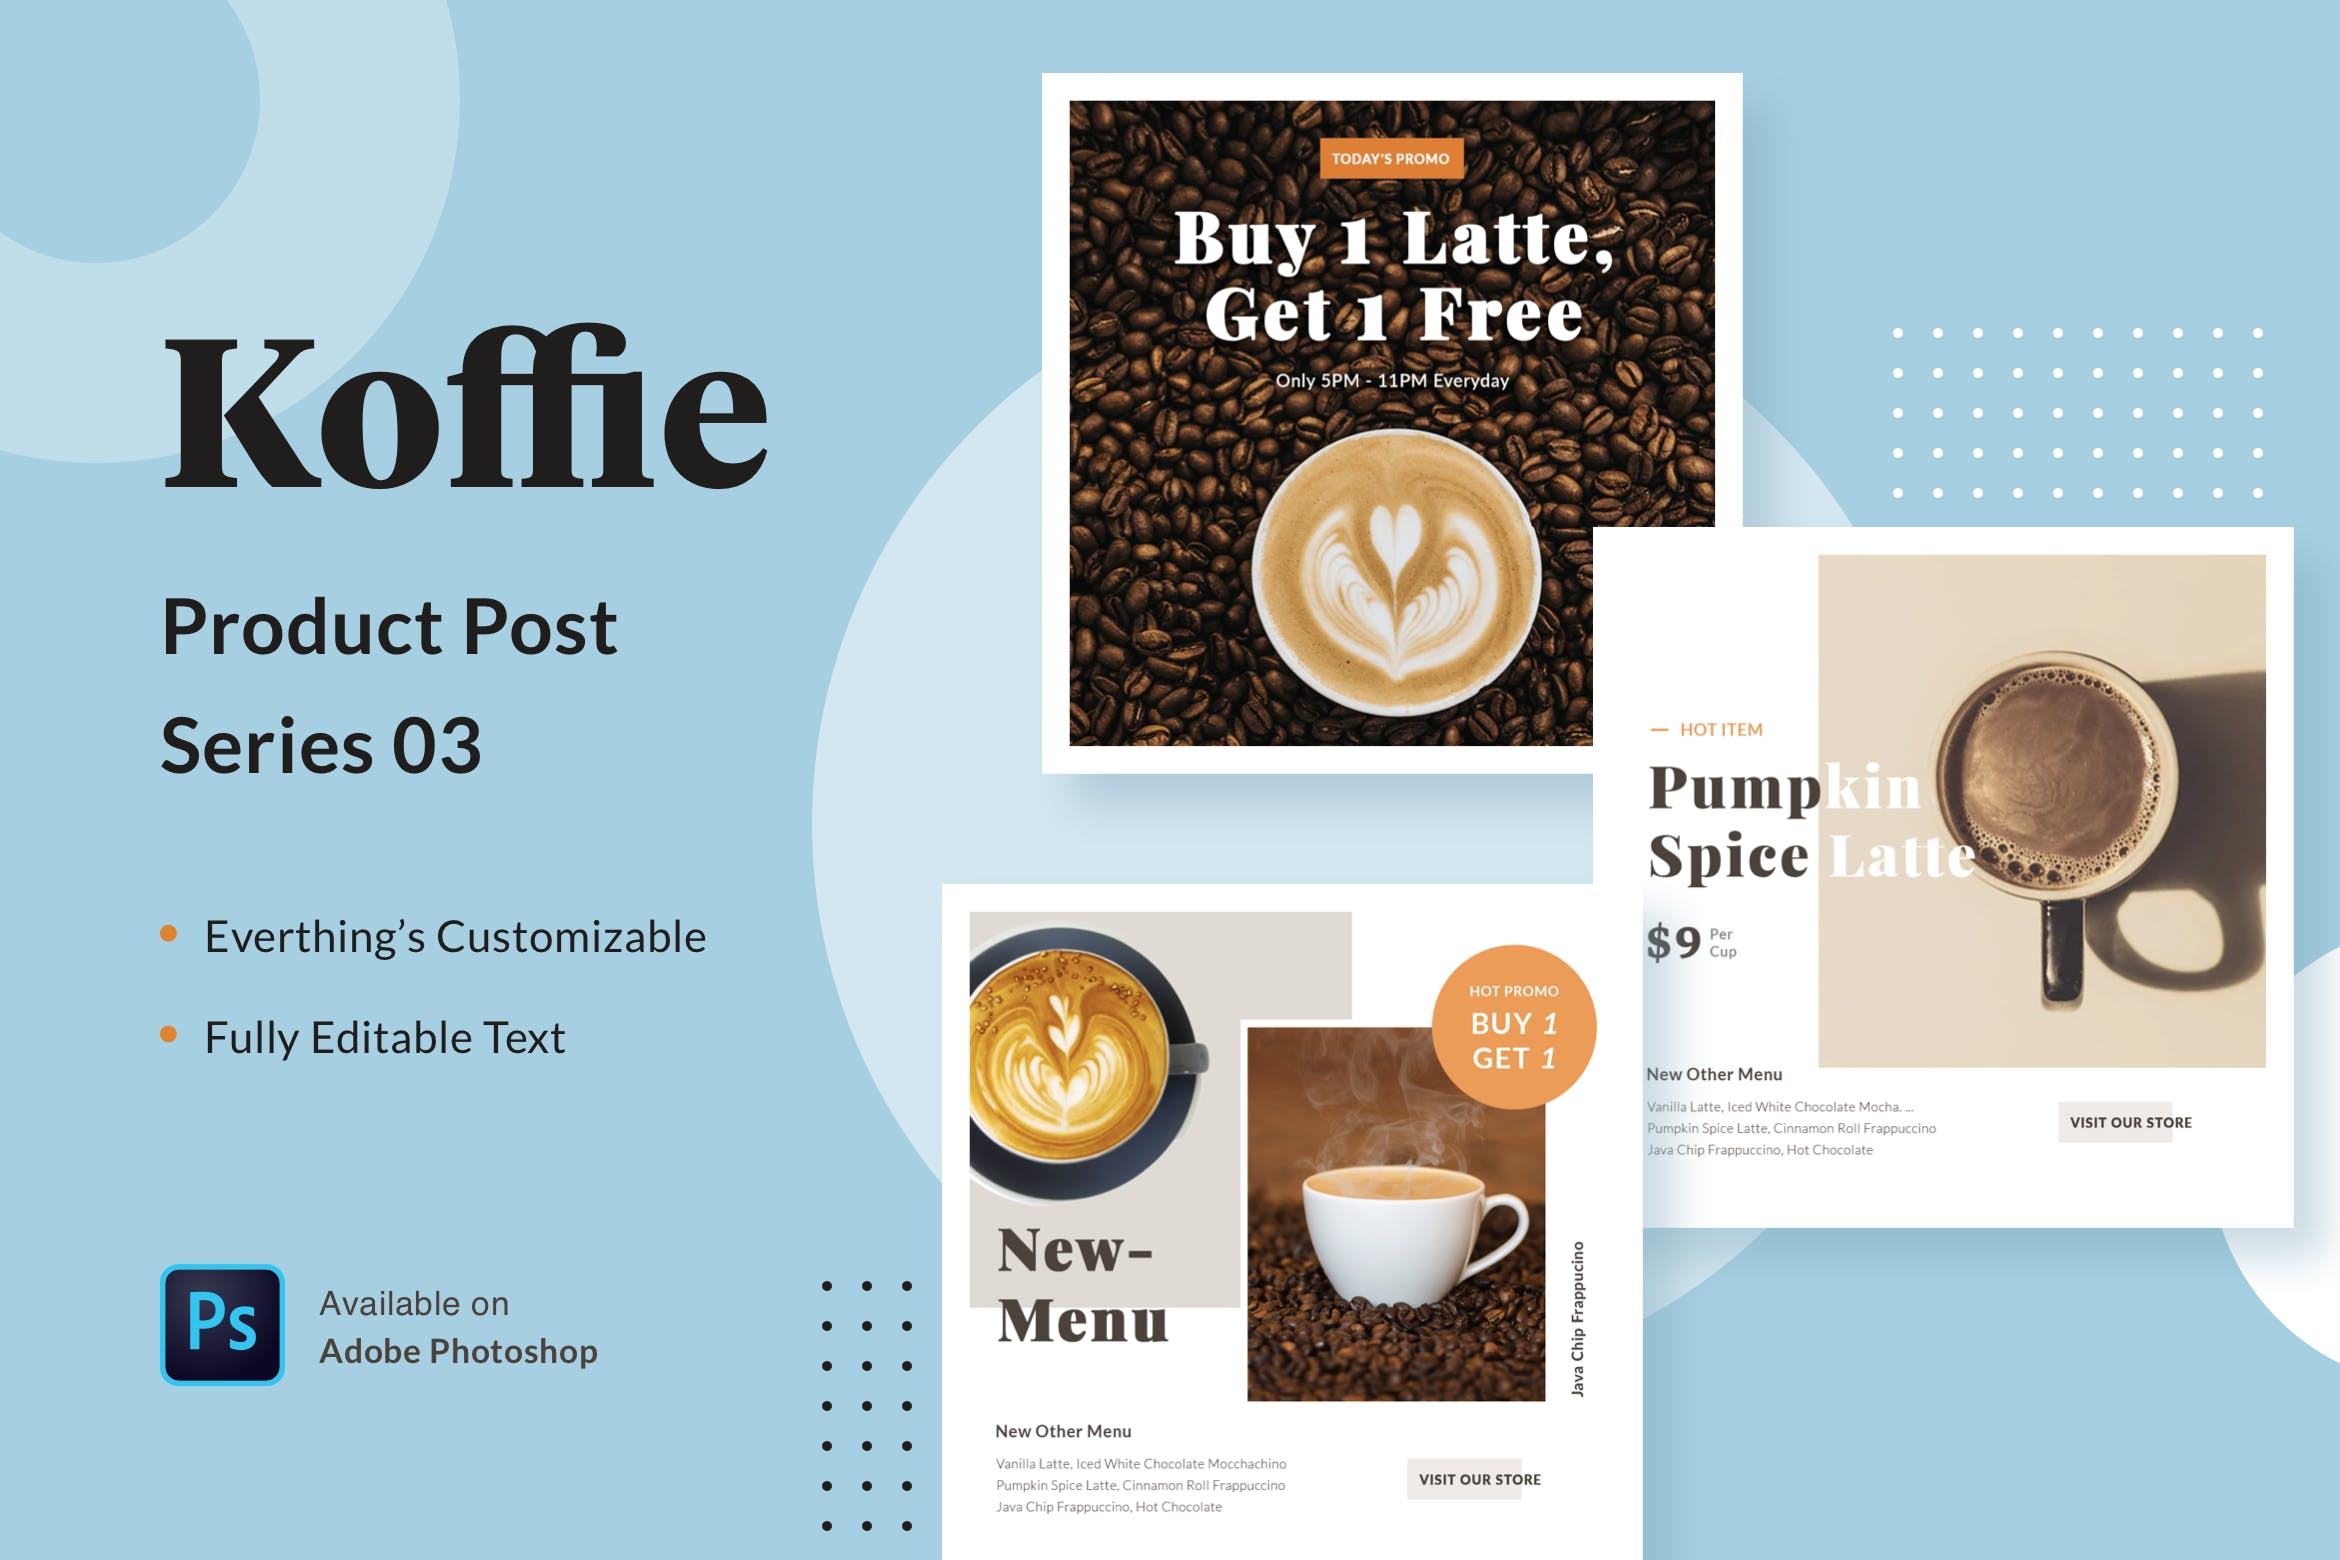 高端咖啡品牌广告设计PSD模板v03 Koffie Product – Series 03插图